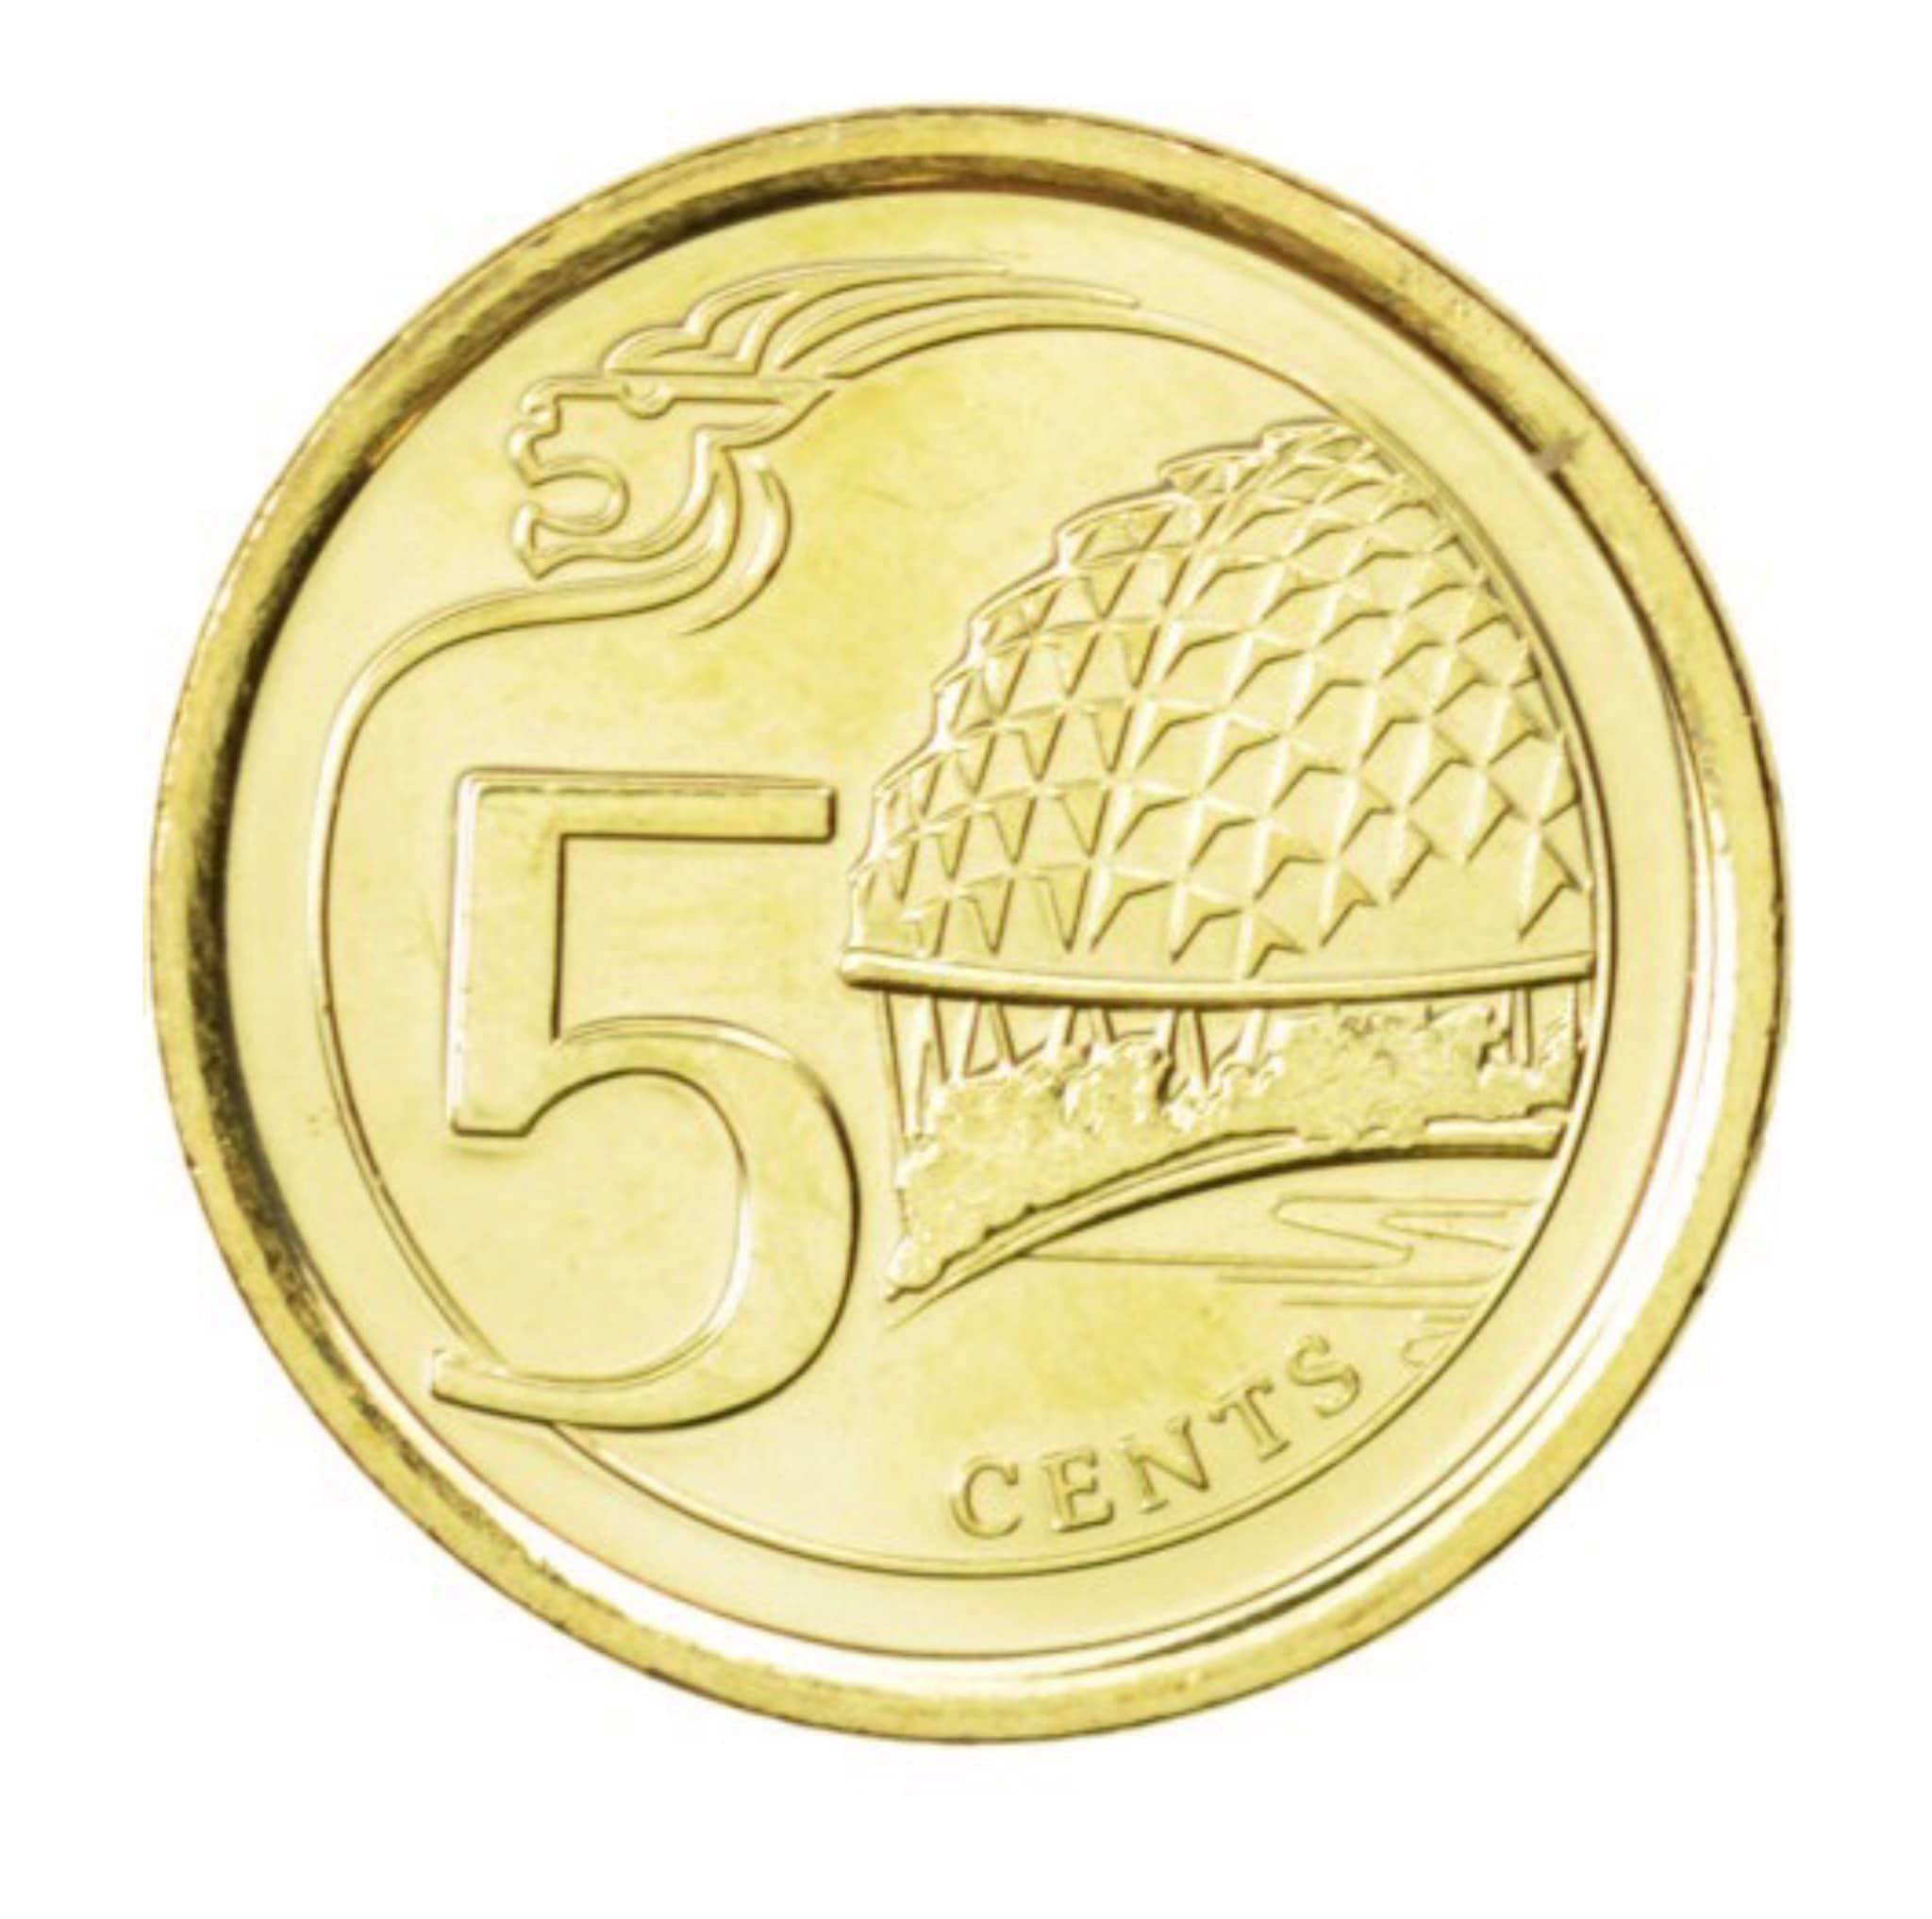 Đồng xu Singapore 5 cent phiên bản mới